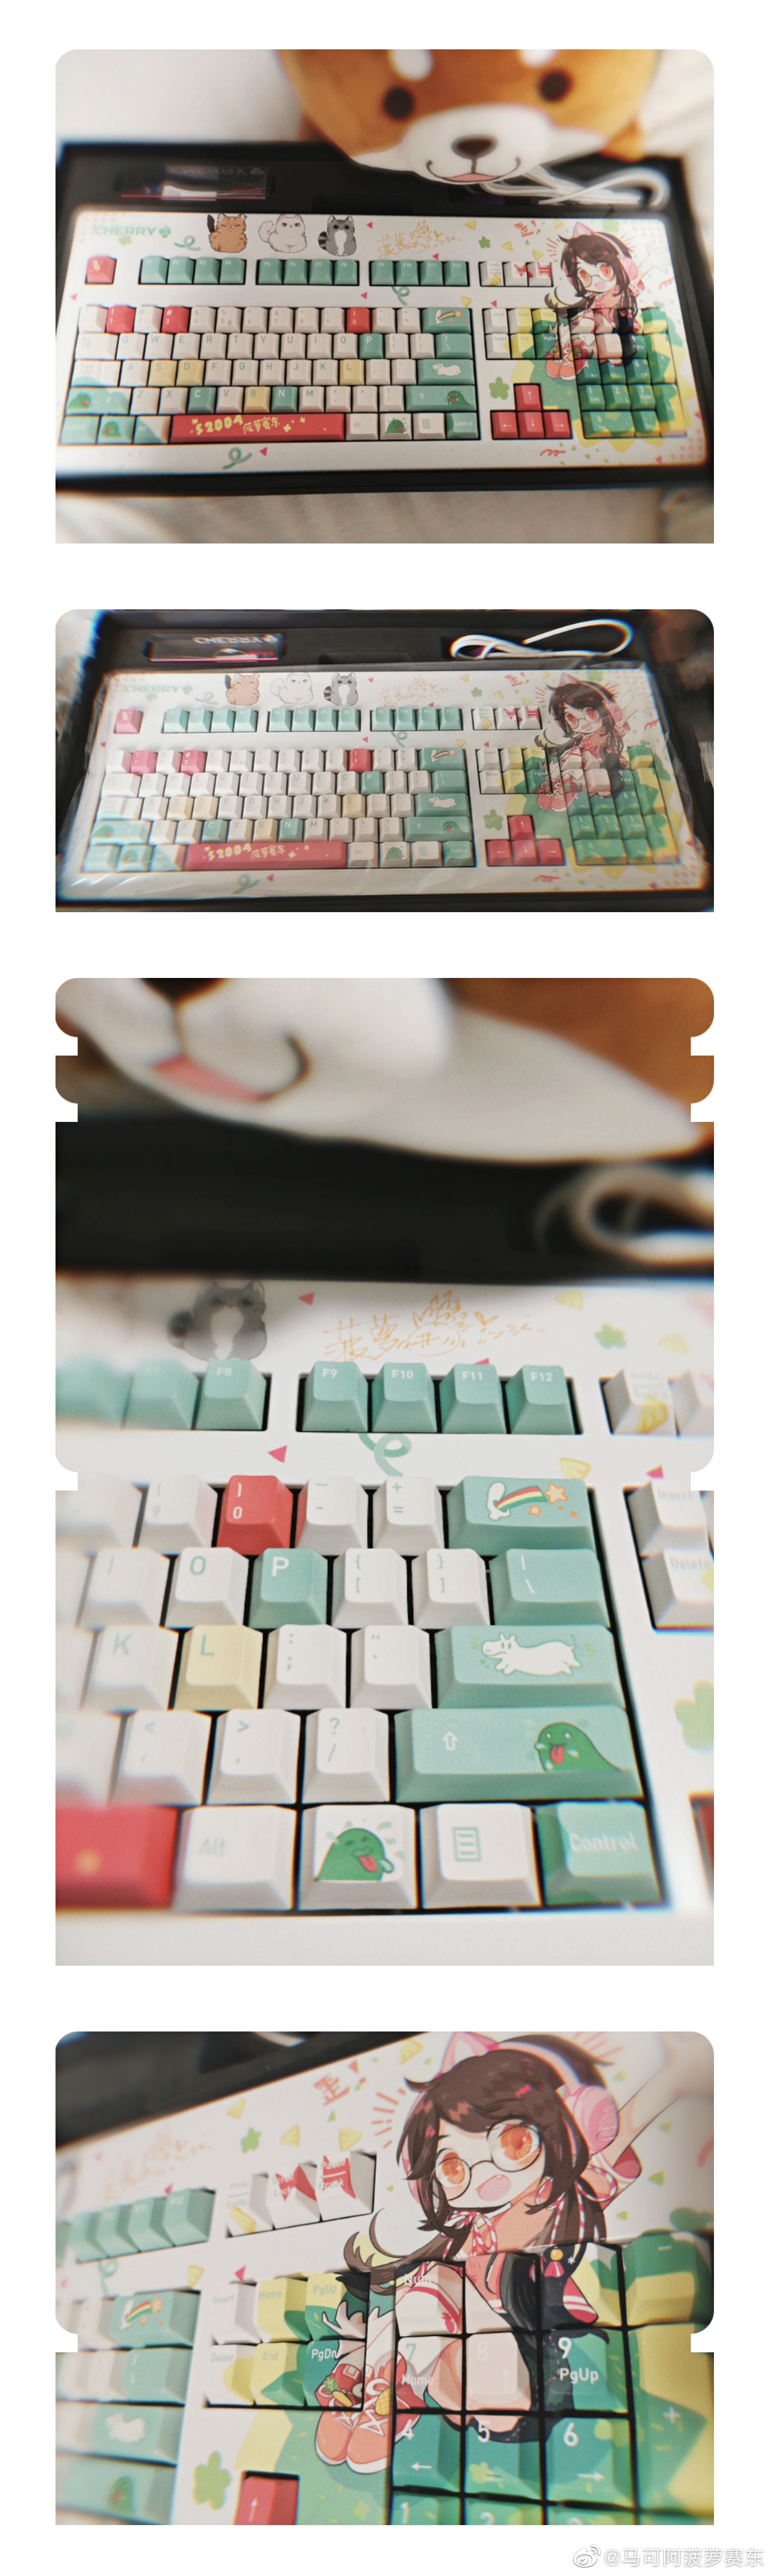 菠蘿賽東鍵盤1.jpg